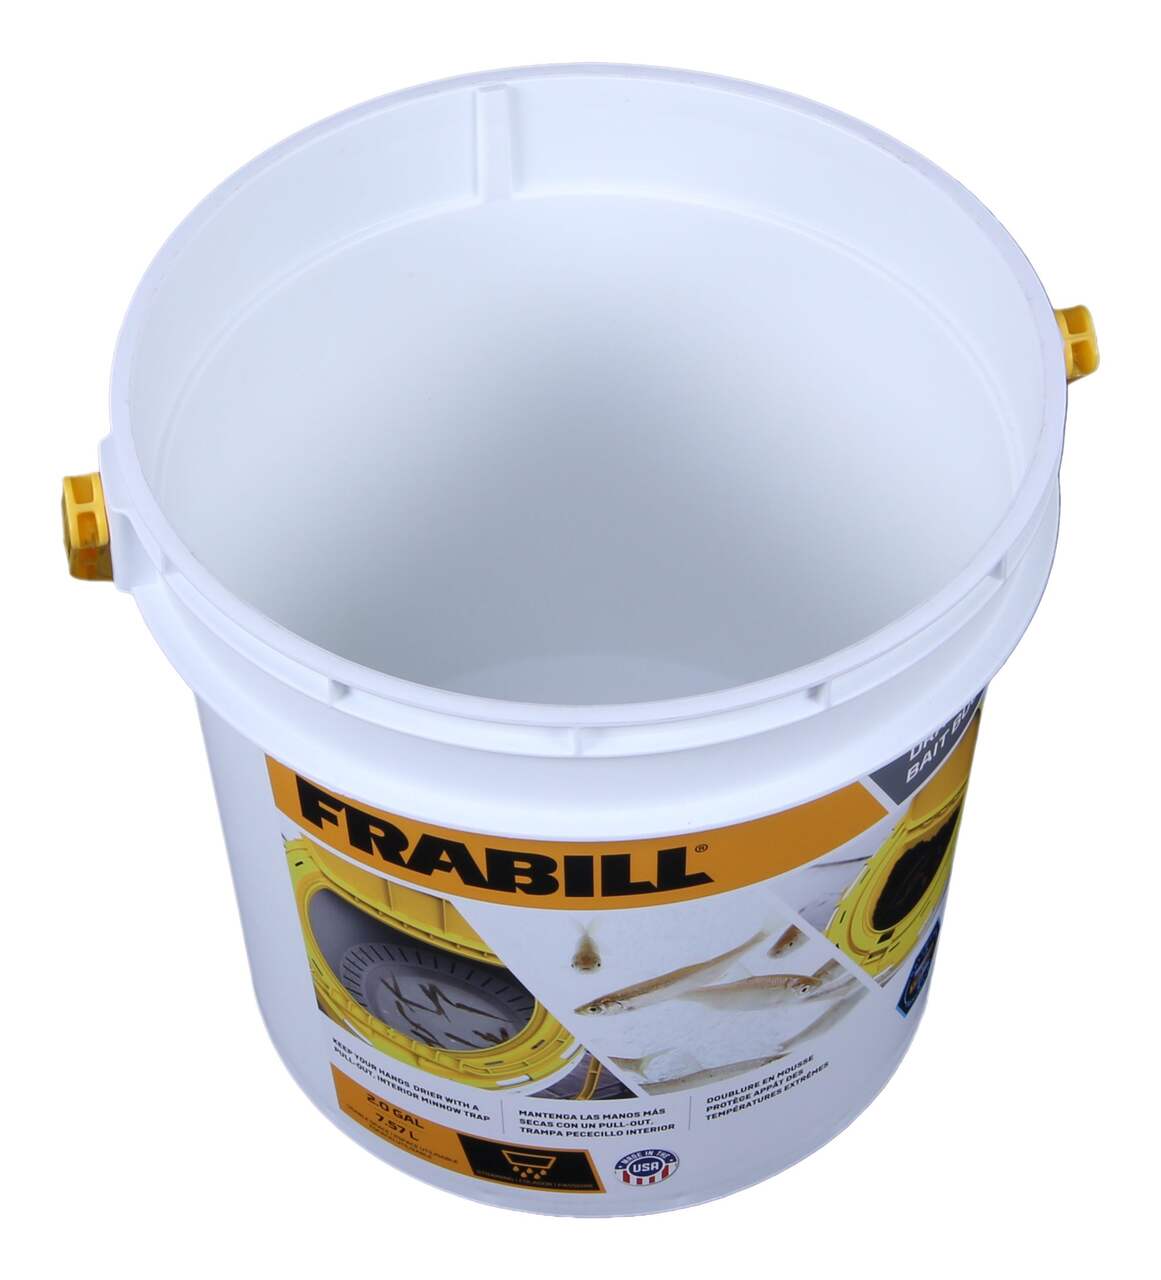 Bait Buckets  Frabill® – Frabill Fishing